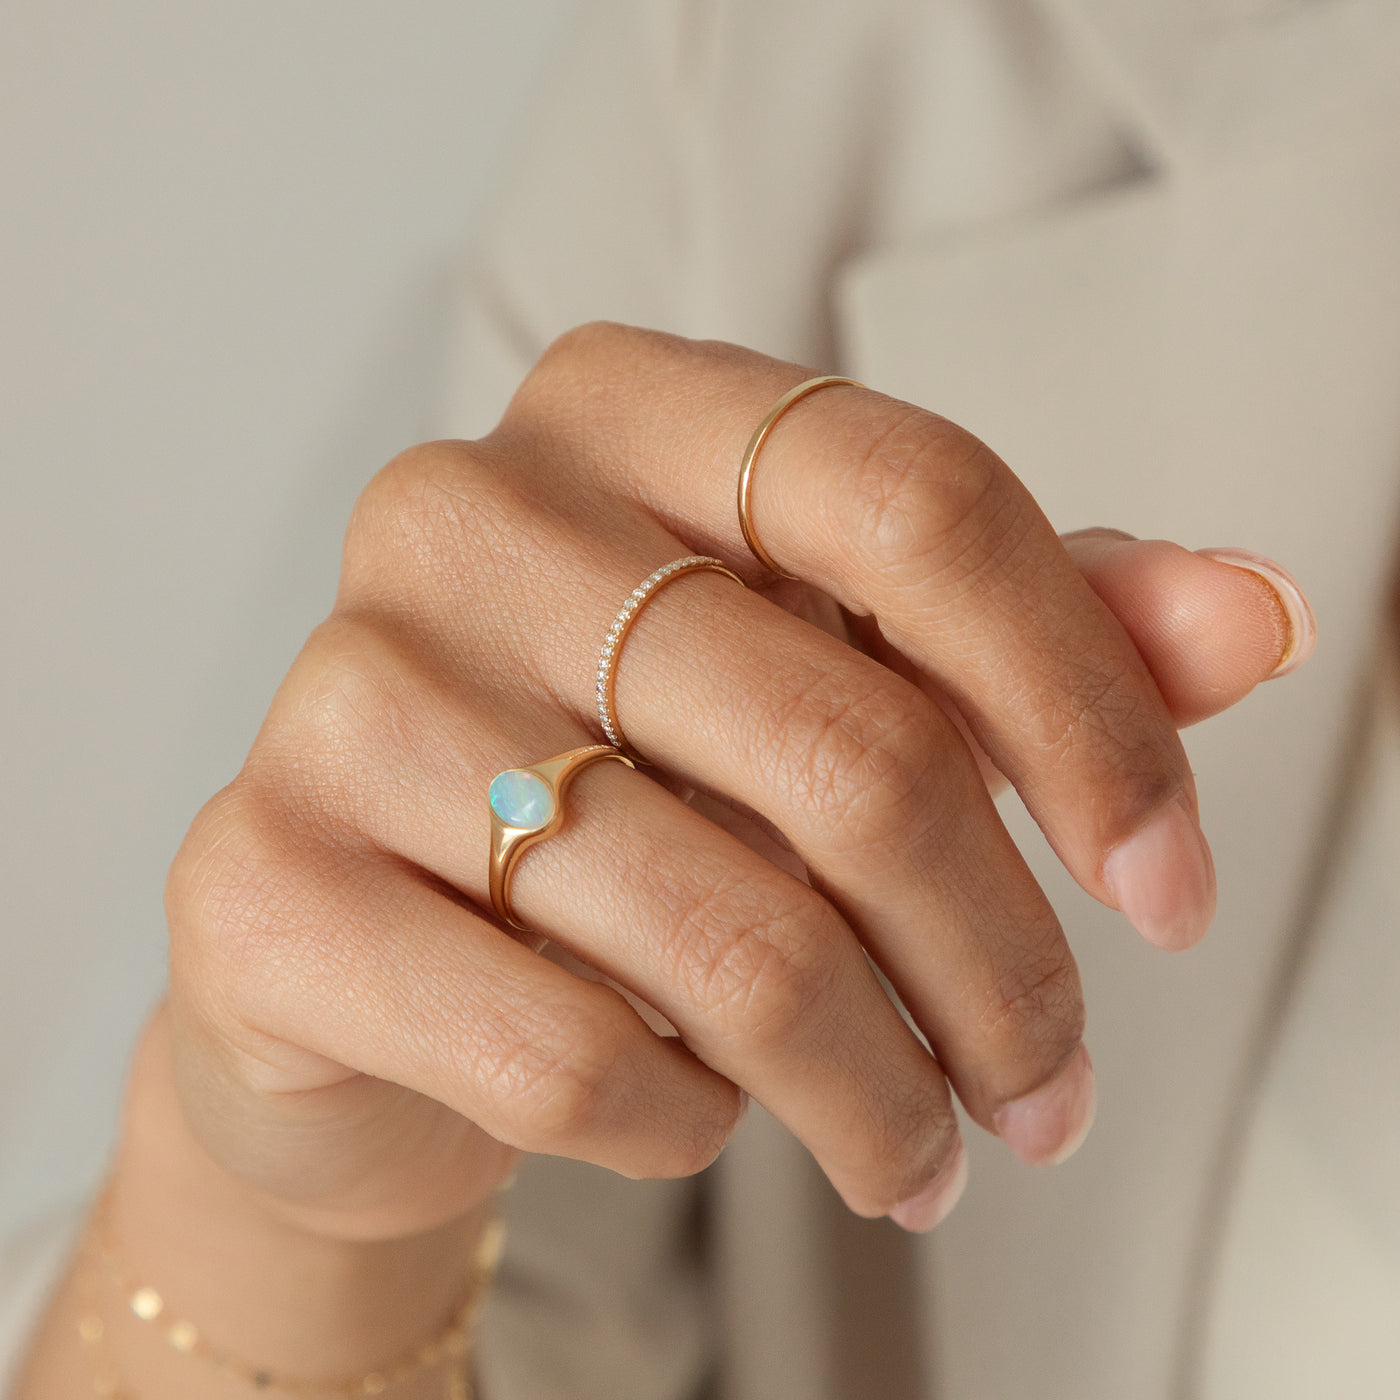 Pavé Diamond Ring | Simple & Dainty Jewelry